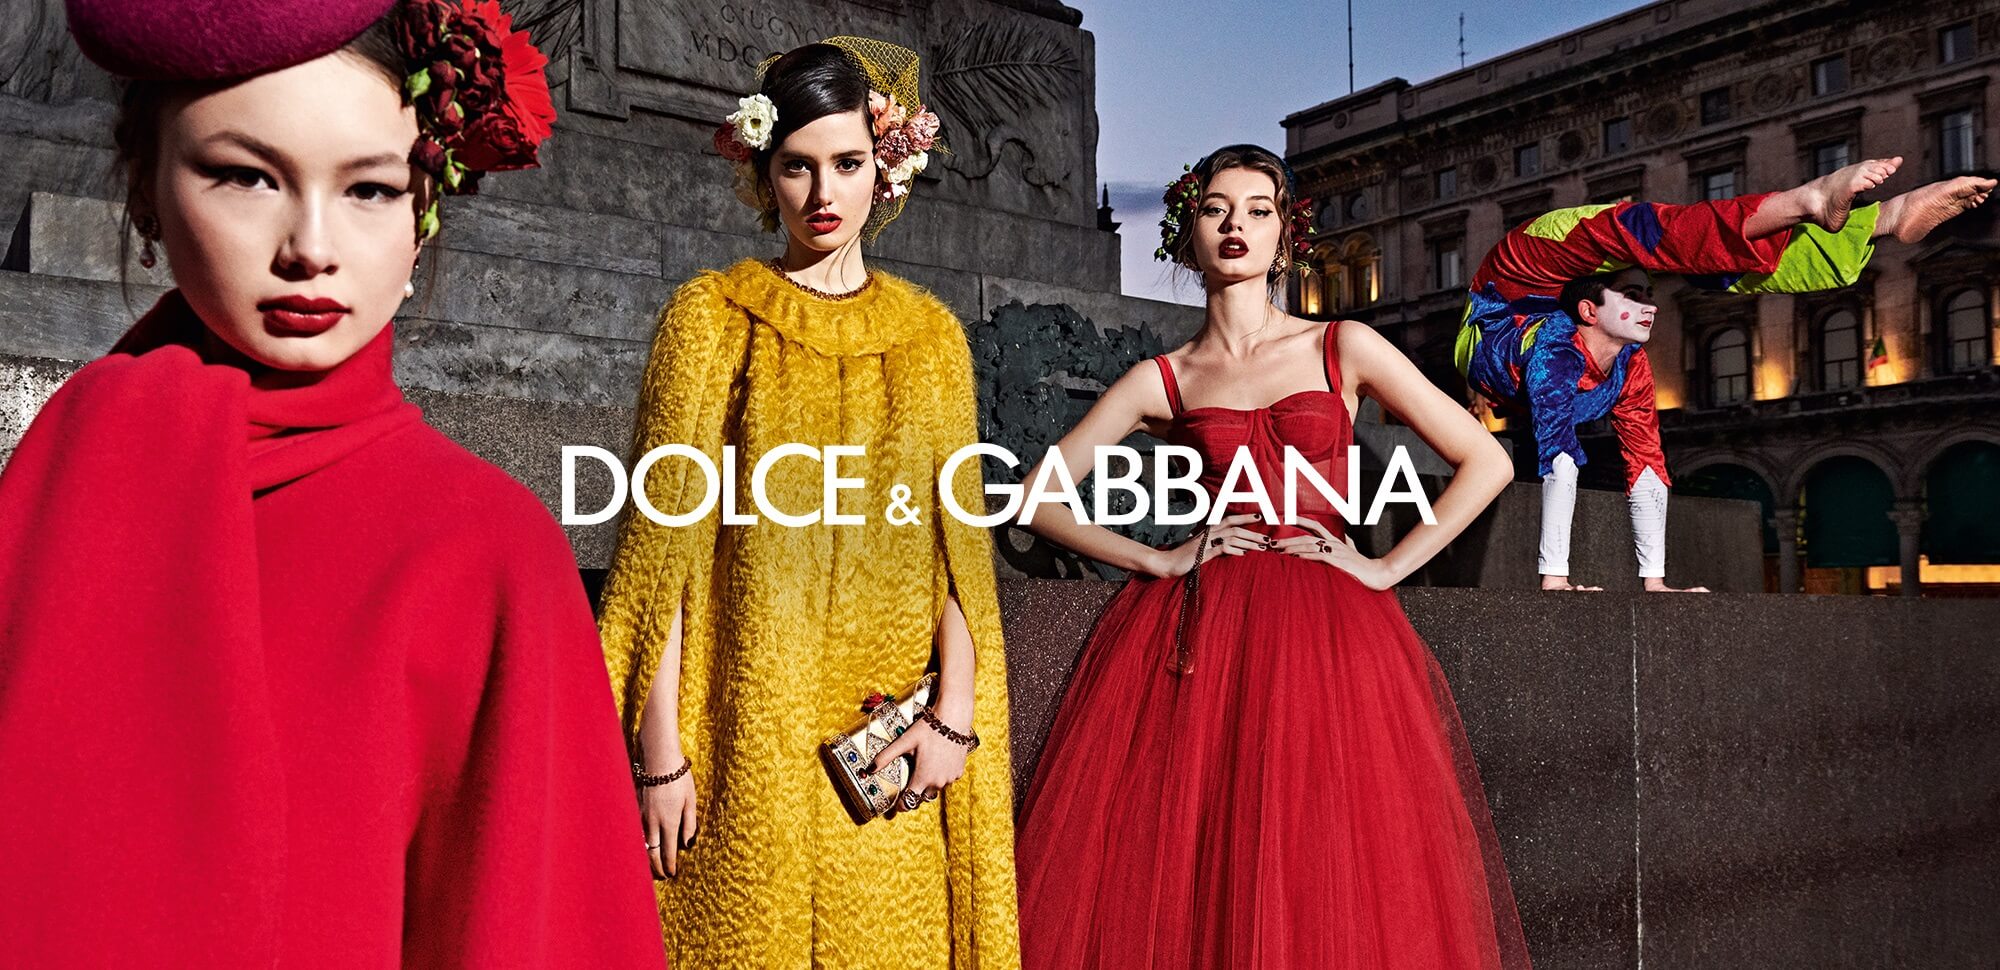 Купить Dolce&Gabbana в Покровском пассаже